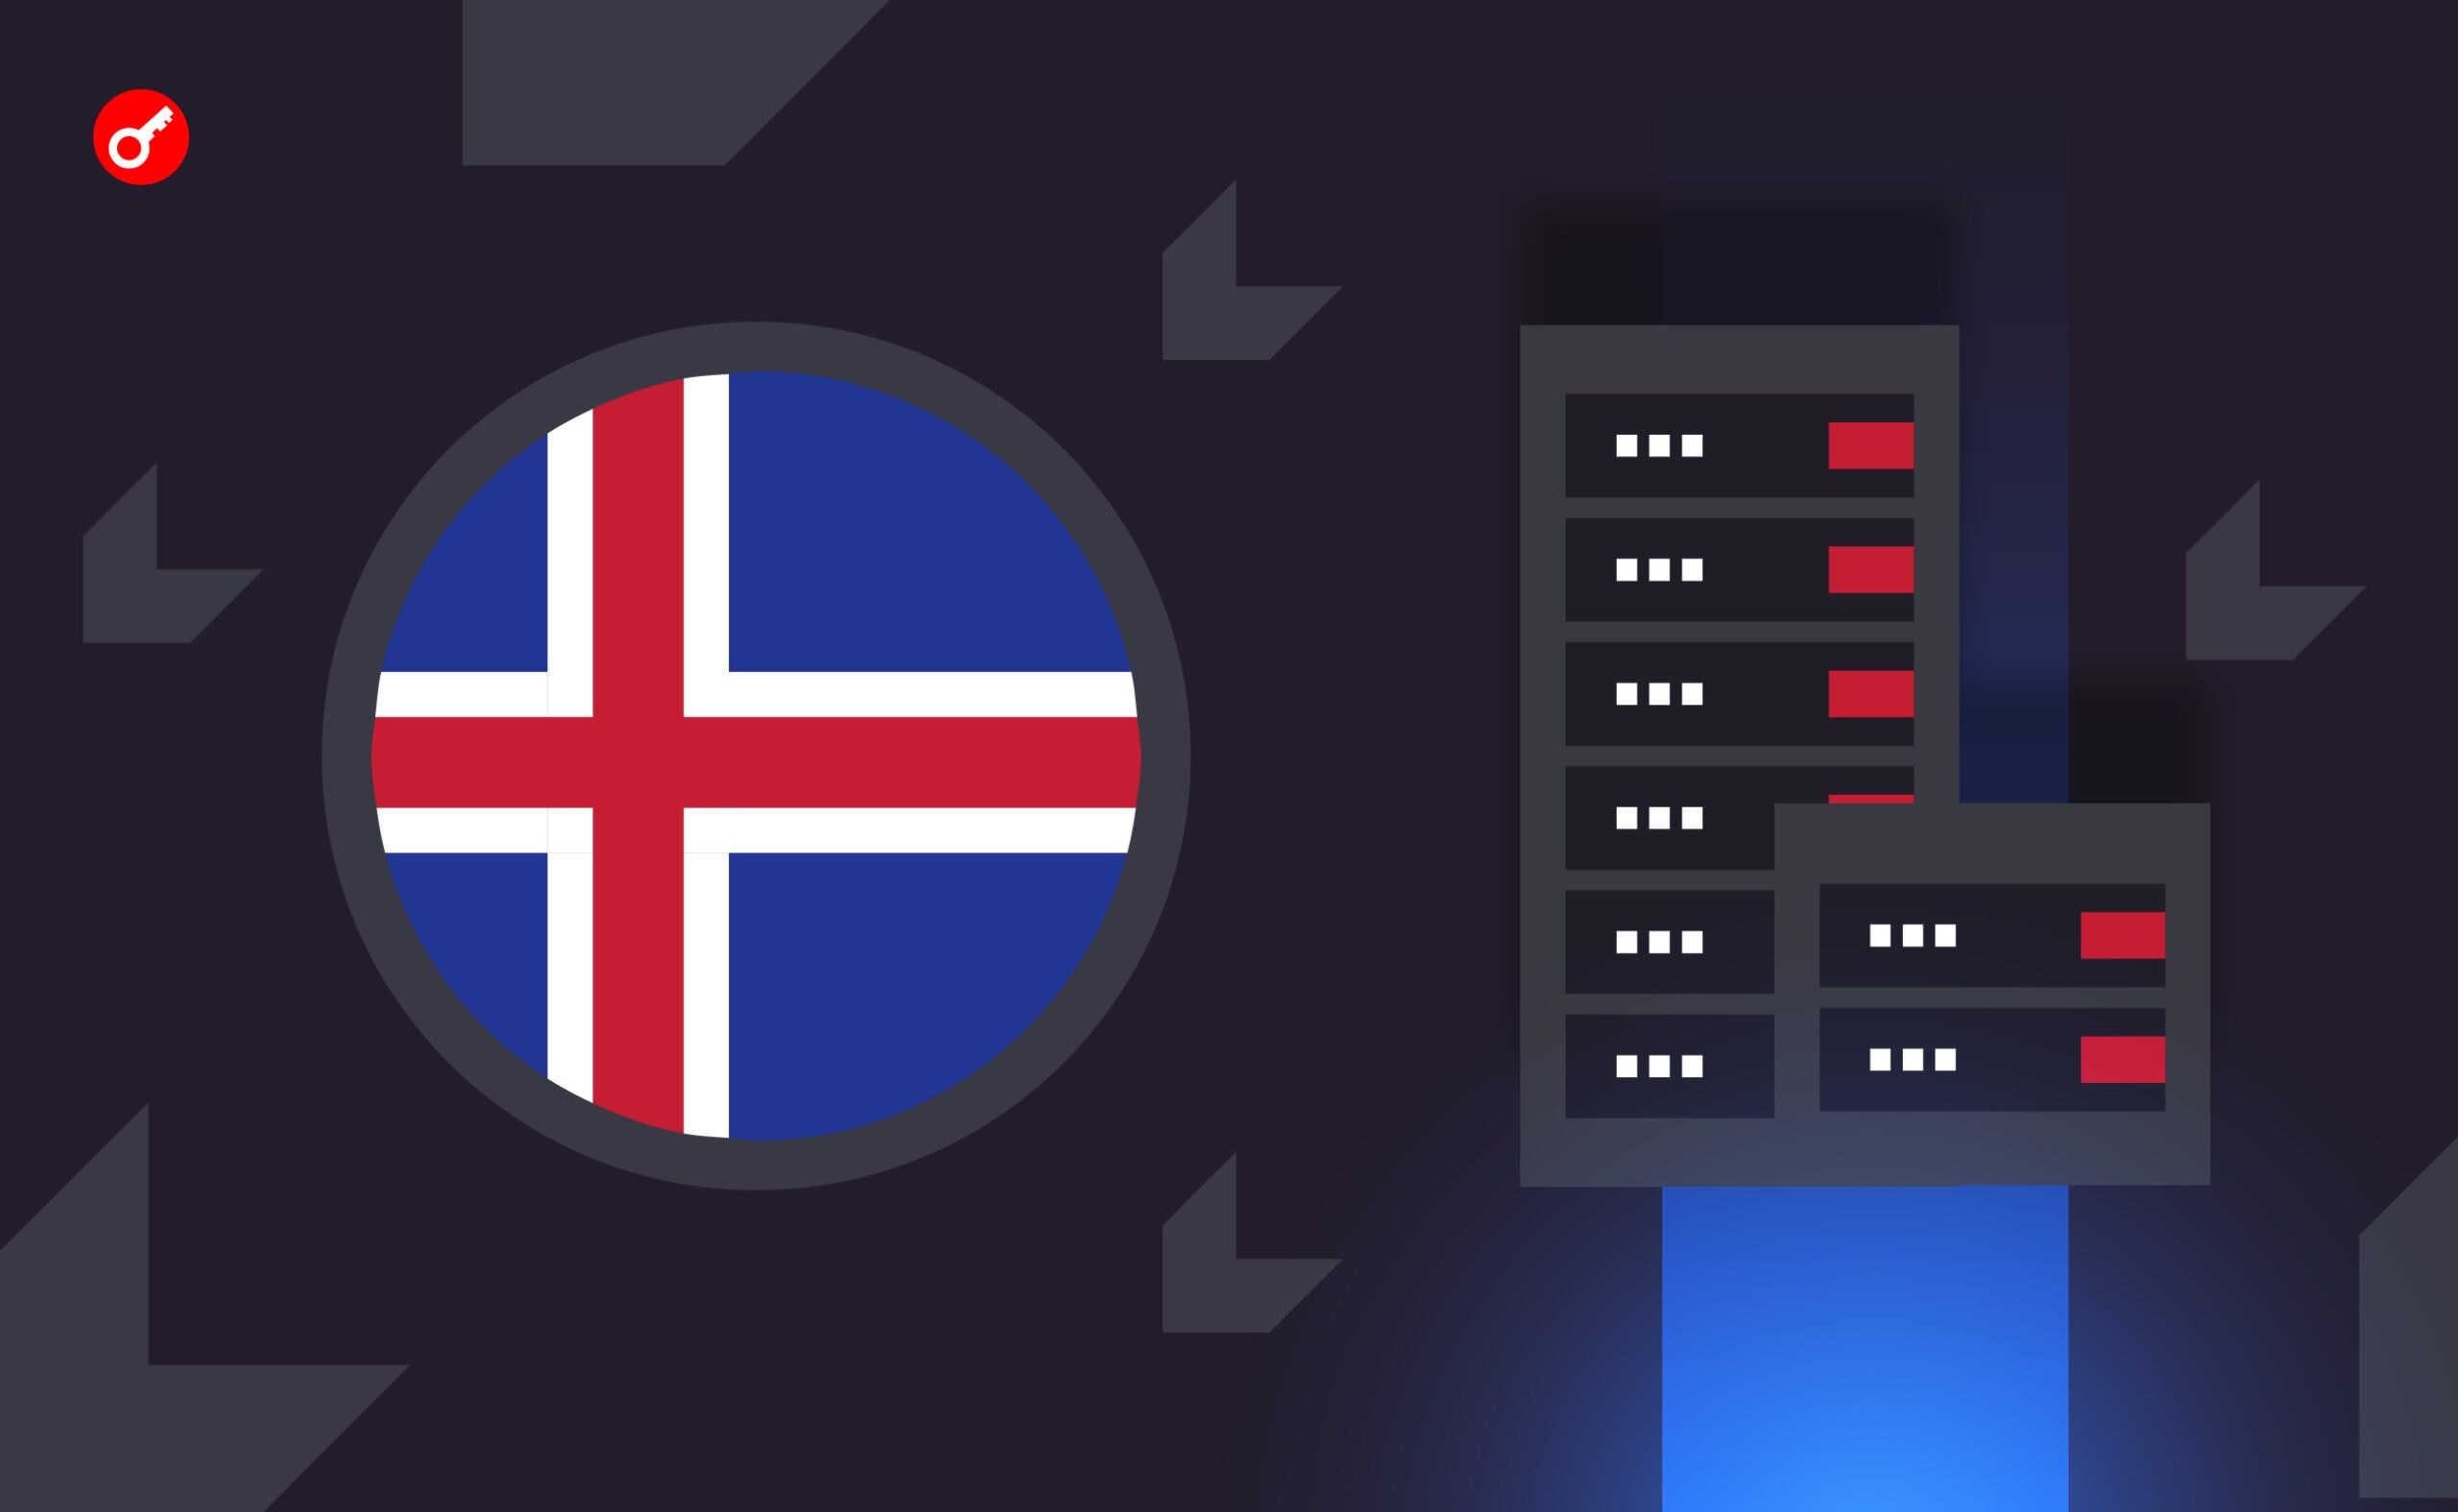 Власти Исландии предложили ограничить энергоснабжение биткоин-майнеров. Заглавный коллаж новости.